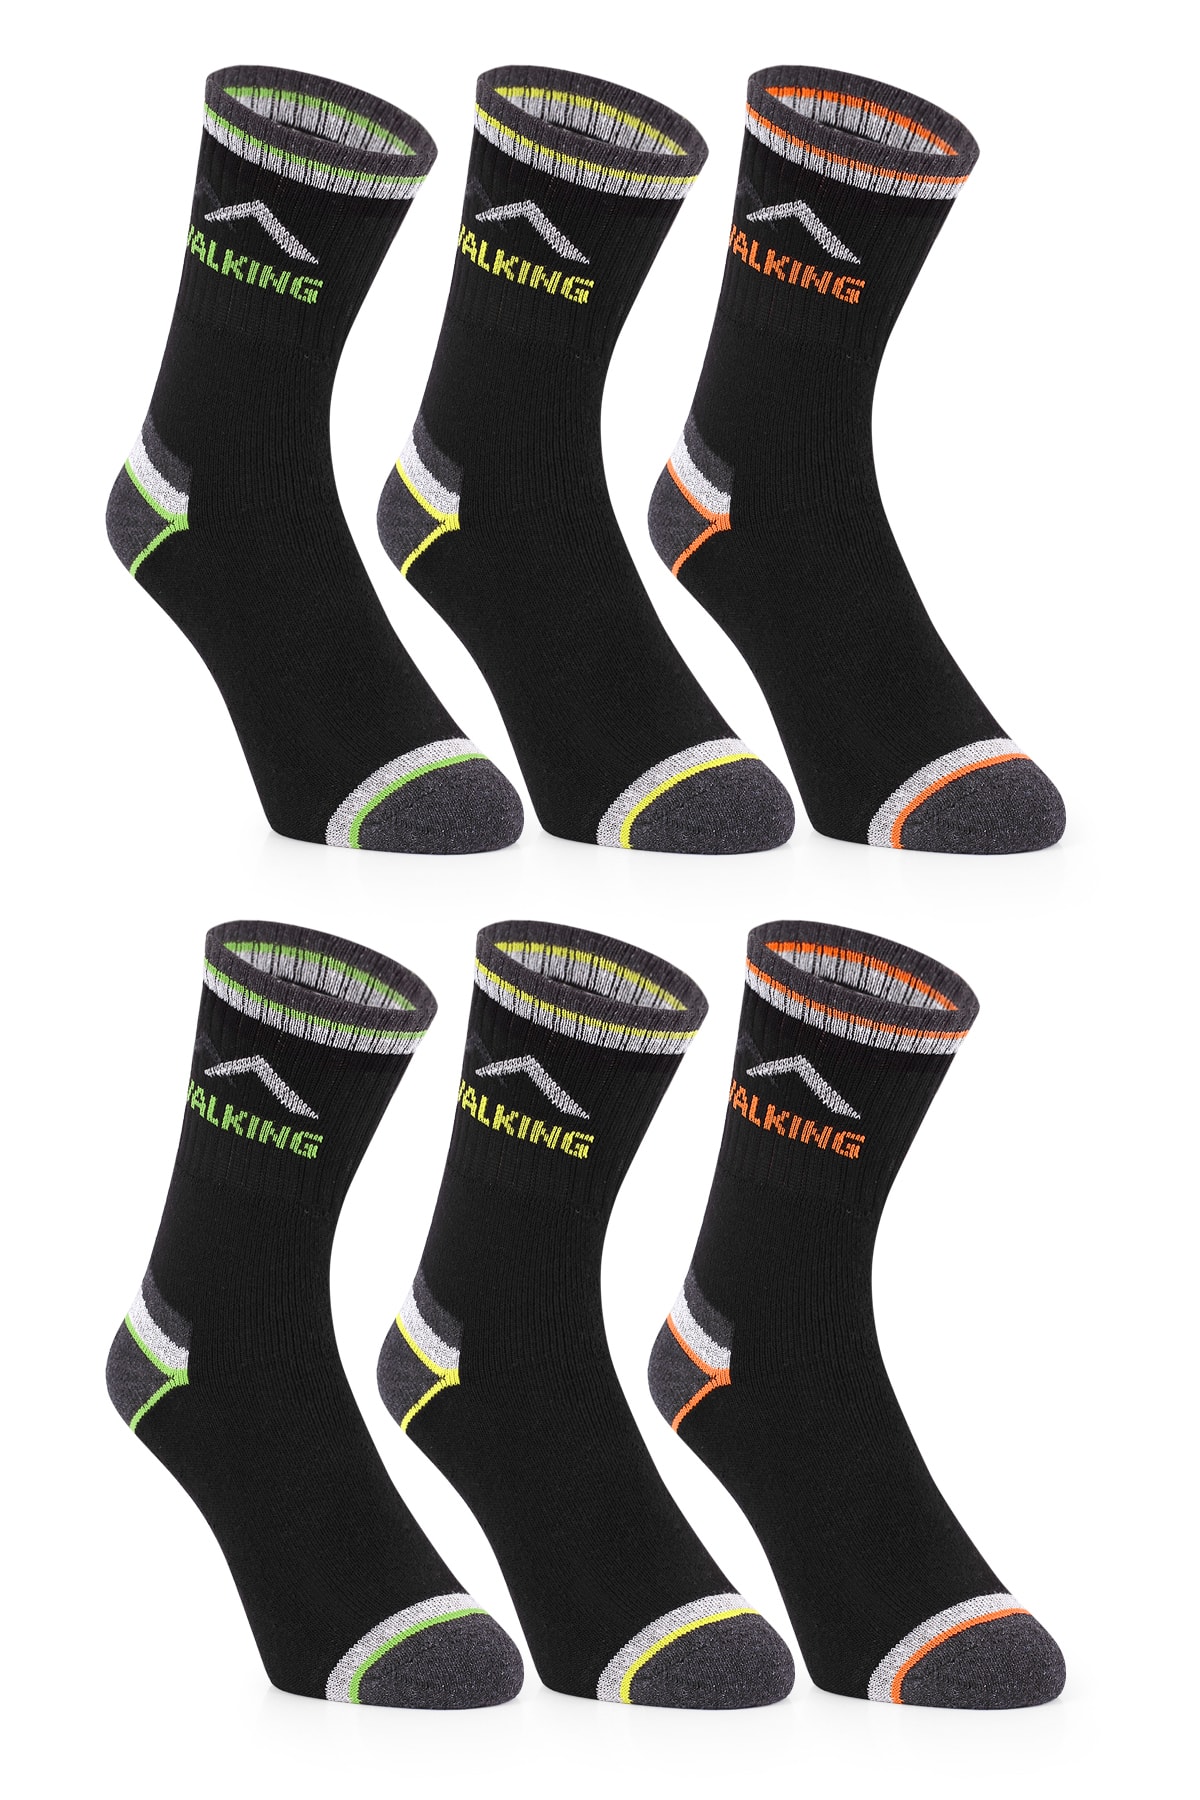 nettofit 6'lı Ekonomik Kışlık Termal Havlu Erkek Soket Tenis Çorap